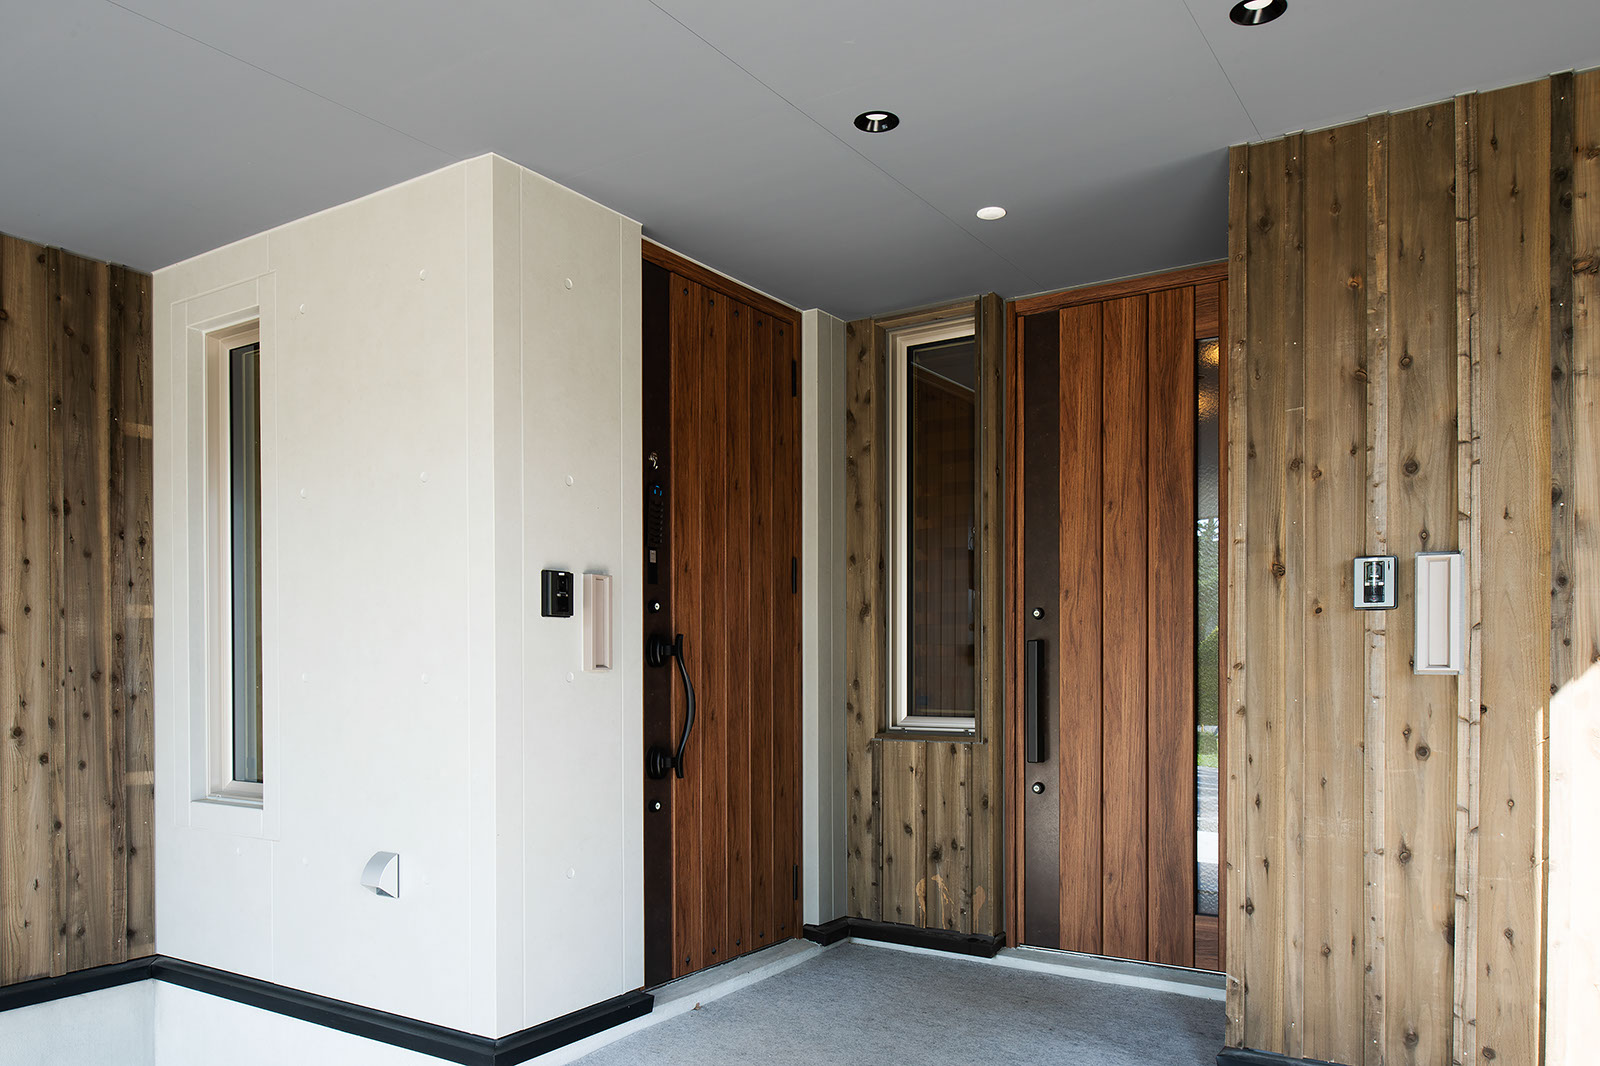 板張り玄関ポーチに合わせて木製ドアを採用した。左側が子世帯、右側がお母さんの住居への入り口